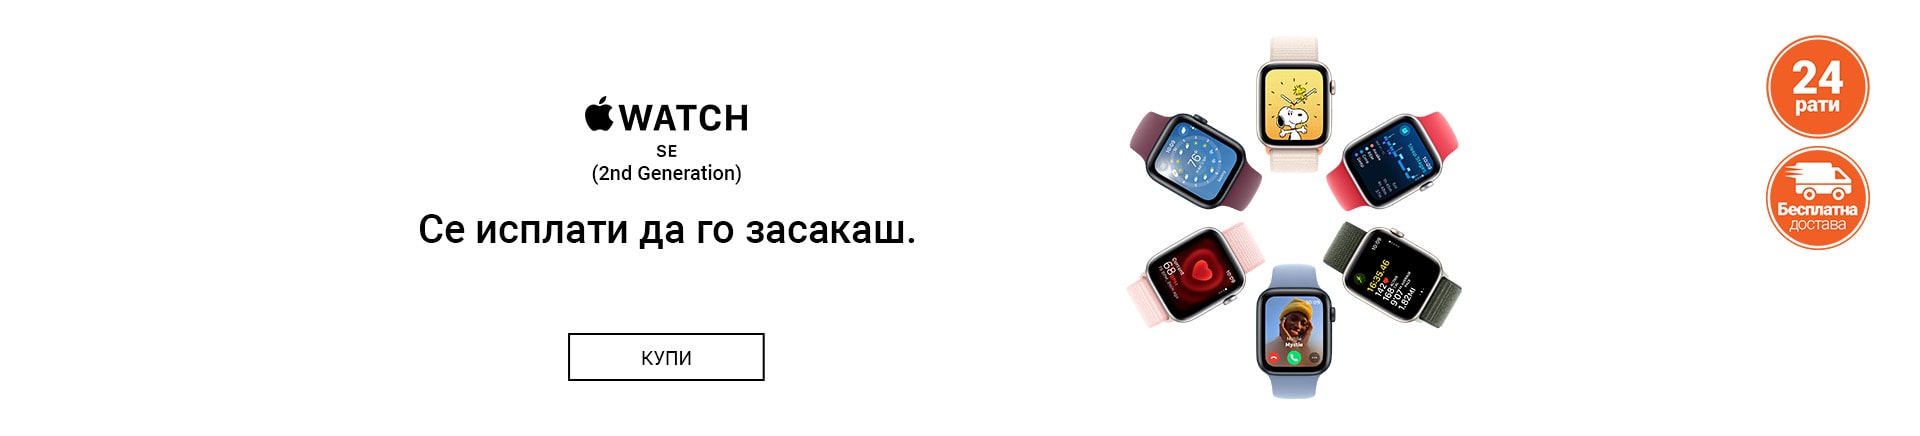 MK~Apple Watch SE2 MOBILE 380 X 436-min.jpg